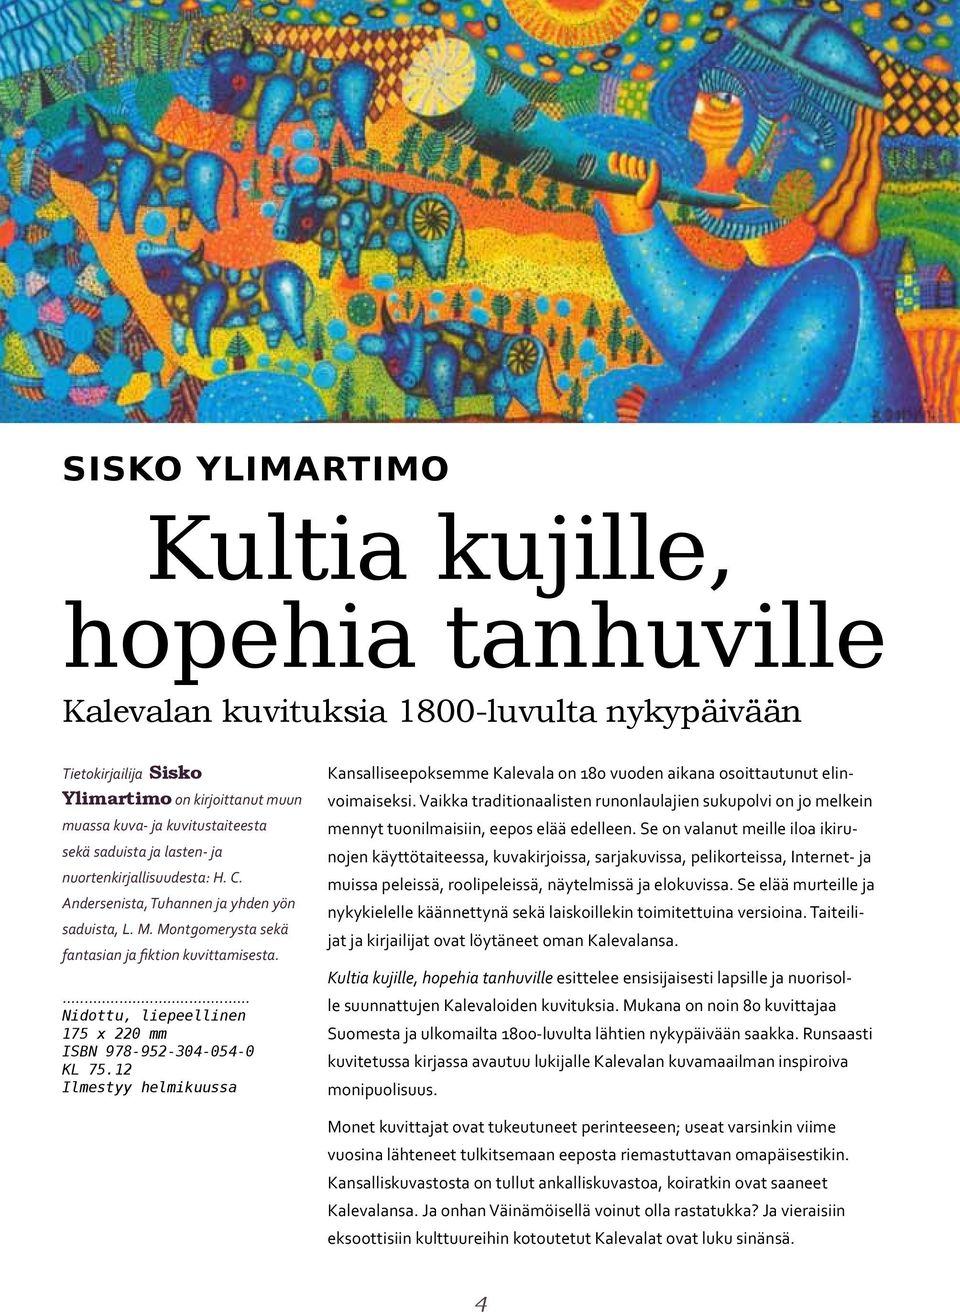 Nidottu, liepeellinen 175 x 220 mm ISBN 978-952-304-054-0 KL 75.12 Ilmestyy helmikuussa Kansalliseepoksemme Kalevala on 180 vuoden aikana osoittautunut elinvoimaiseksi.